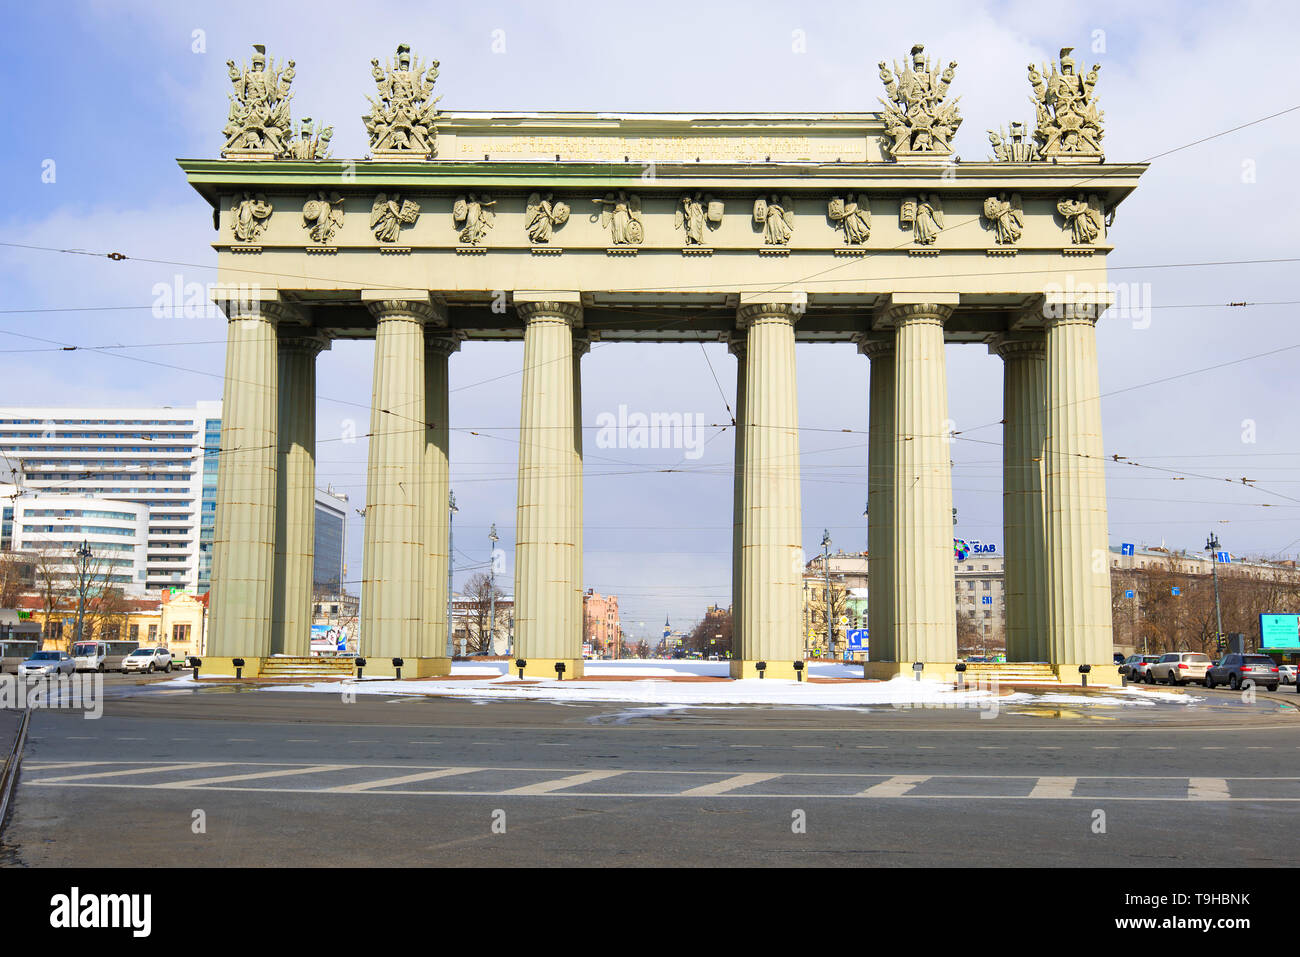 SAINT-Petersburg, Russland - 15 April, 2017: Das Moskau Gate ist ein triuphalic Arch zu Ehren der siegreichen Beendigung des türkischen Krieg von 1829 Stockfoto